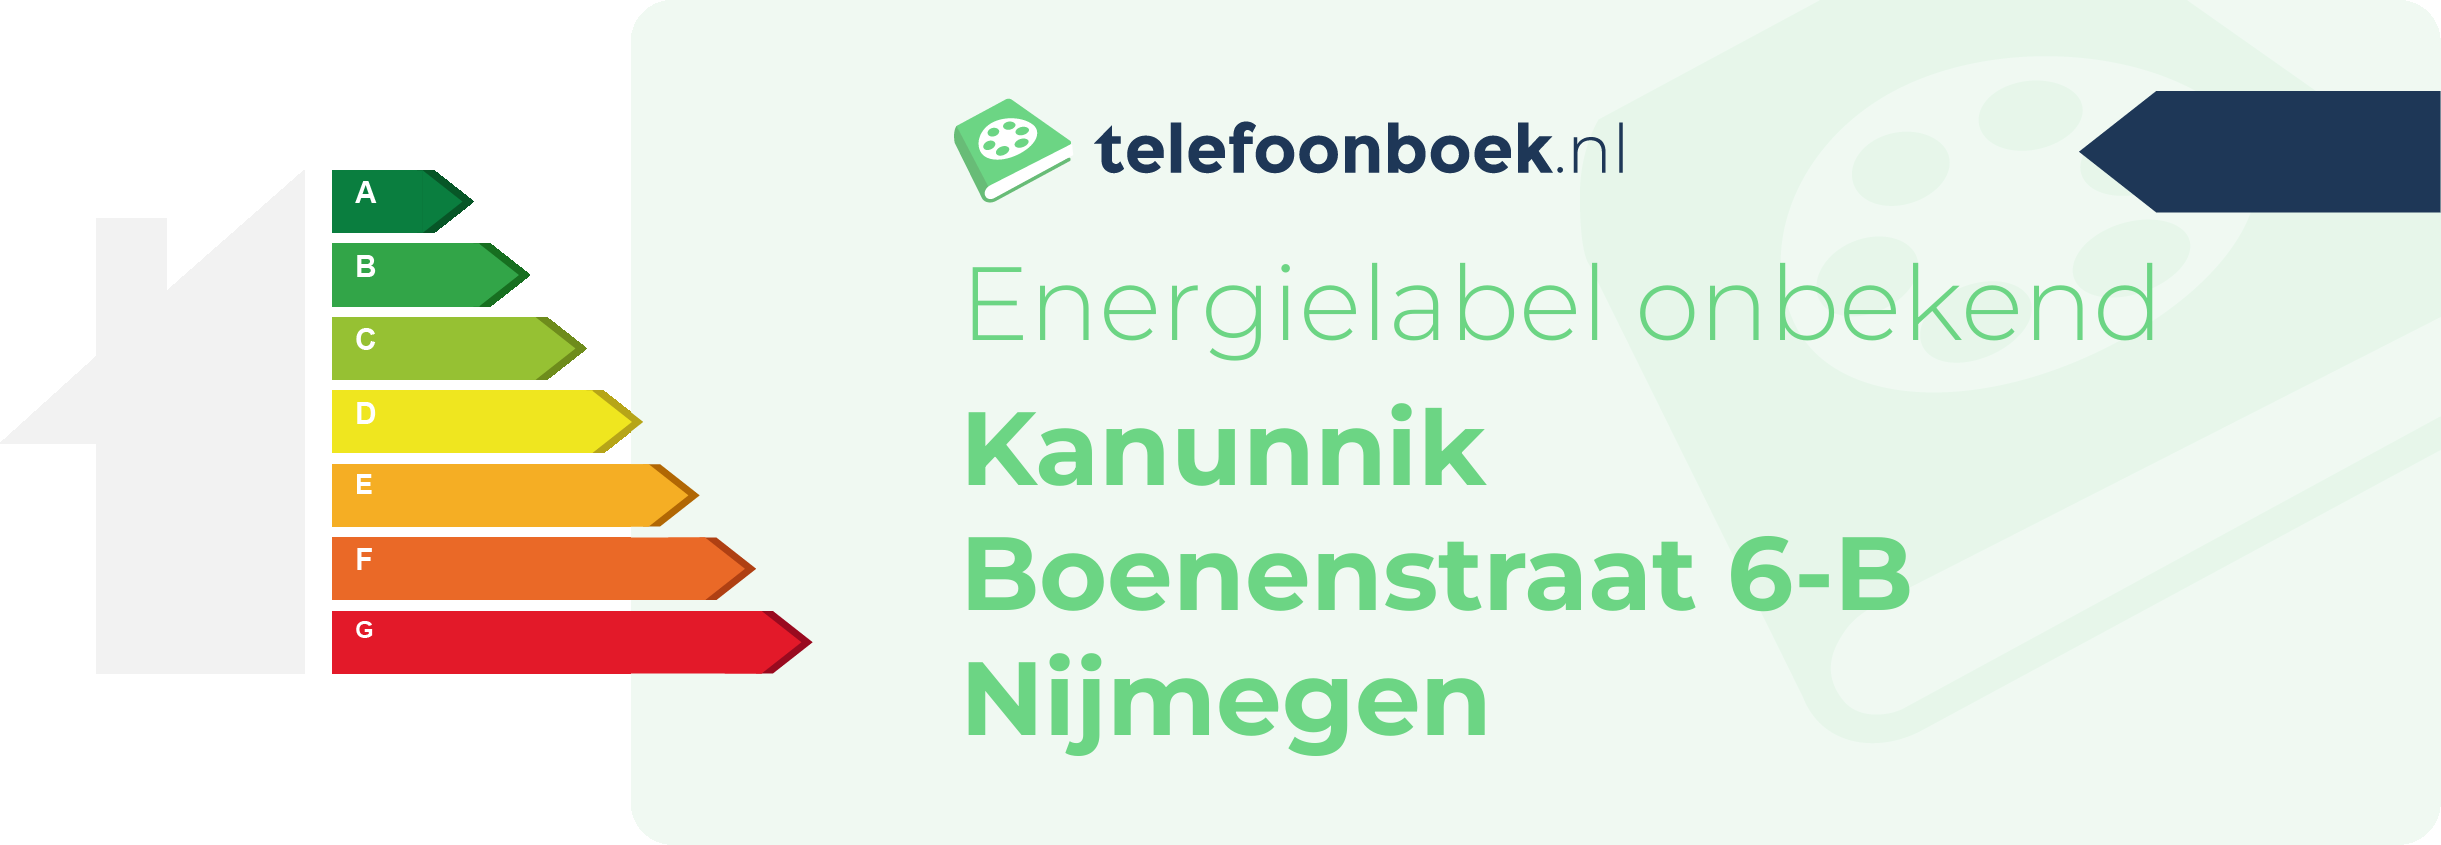 Energielabel Kanunnik Boenenstraat 6-B Nijmegen